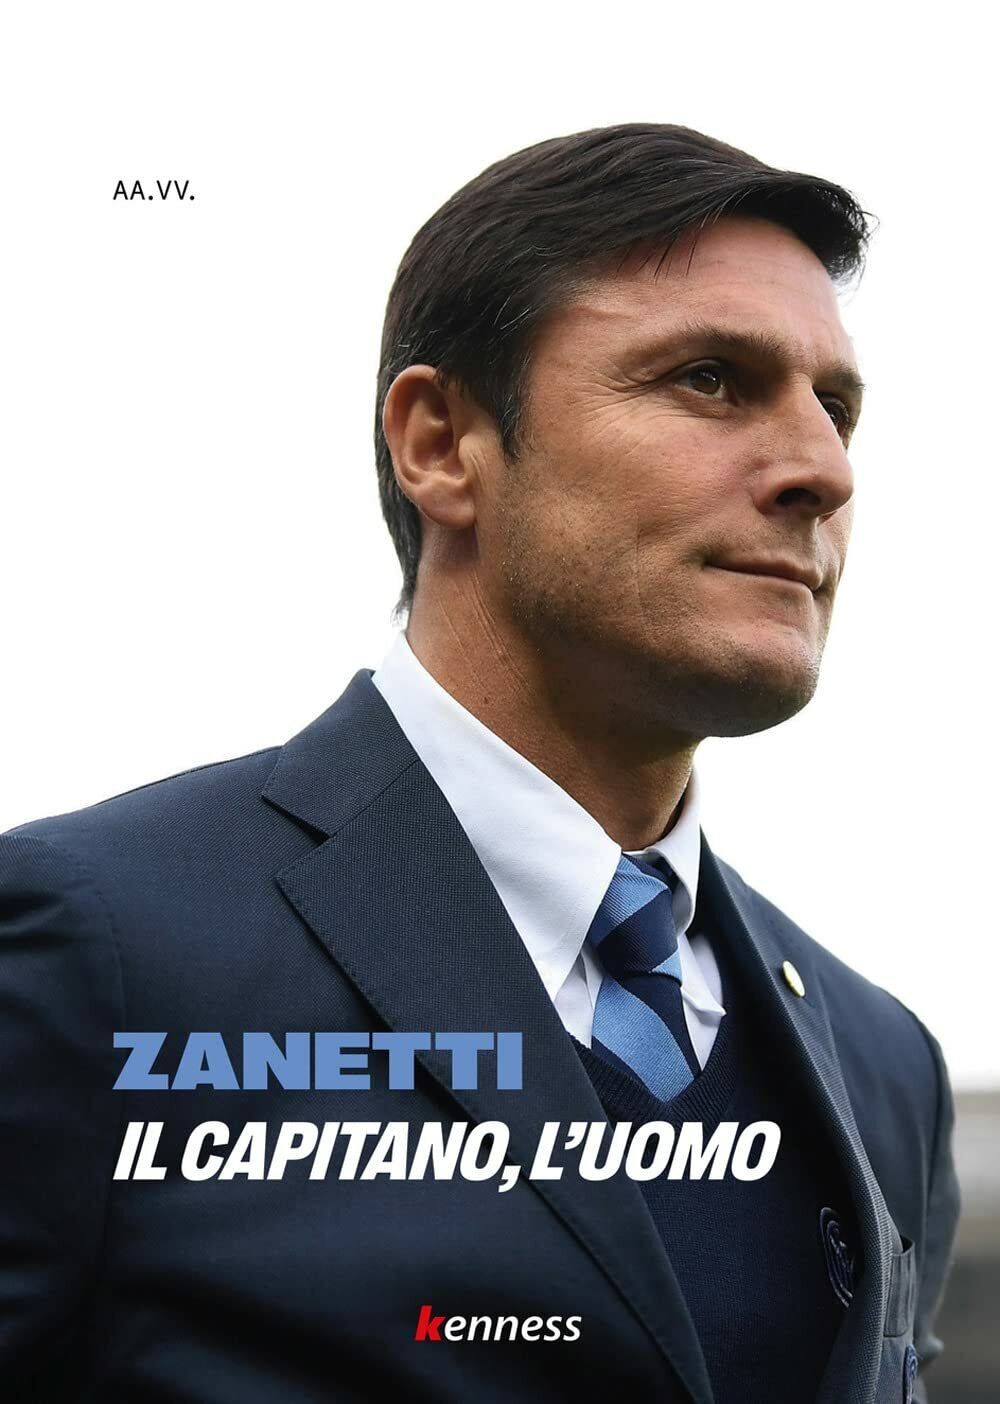 Zanetti. Il capitano, l'uomo - AA.VV. - Kenness Publishing, 2021